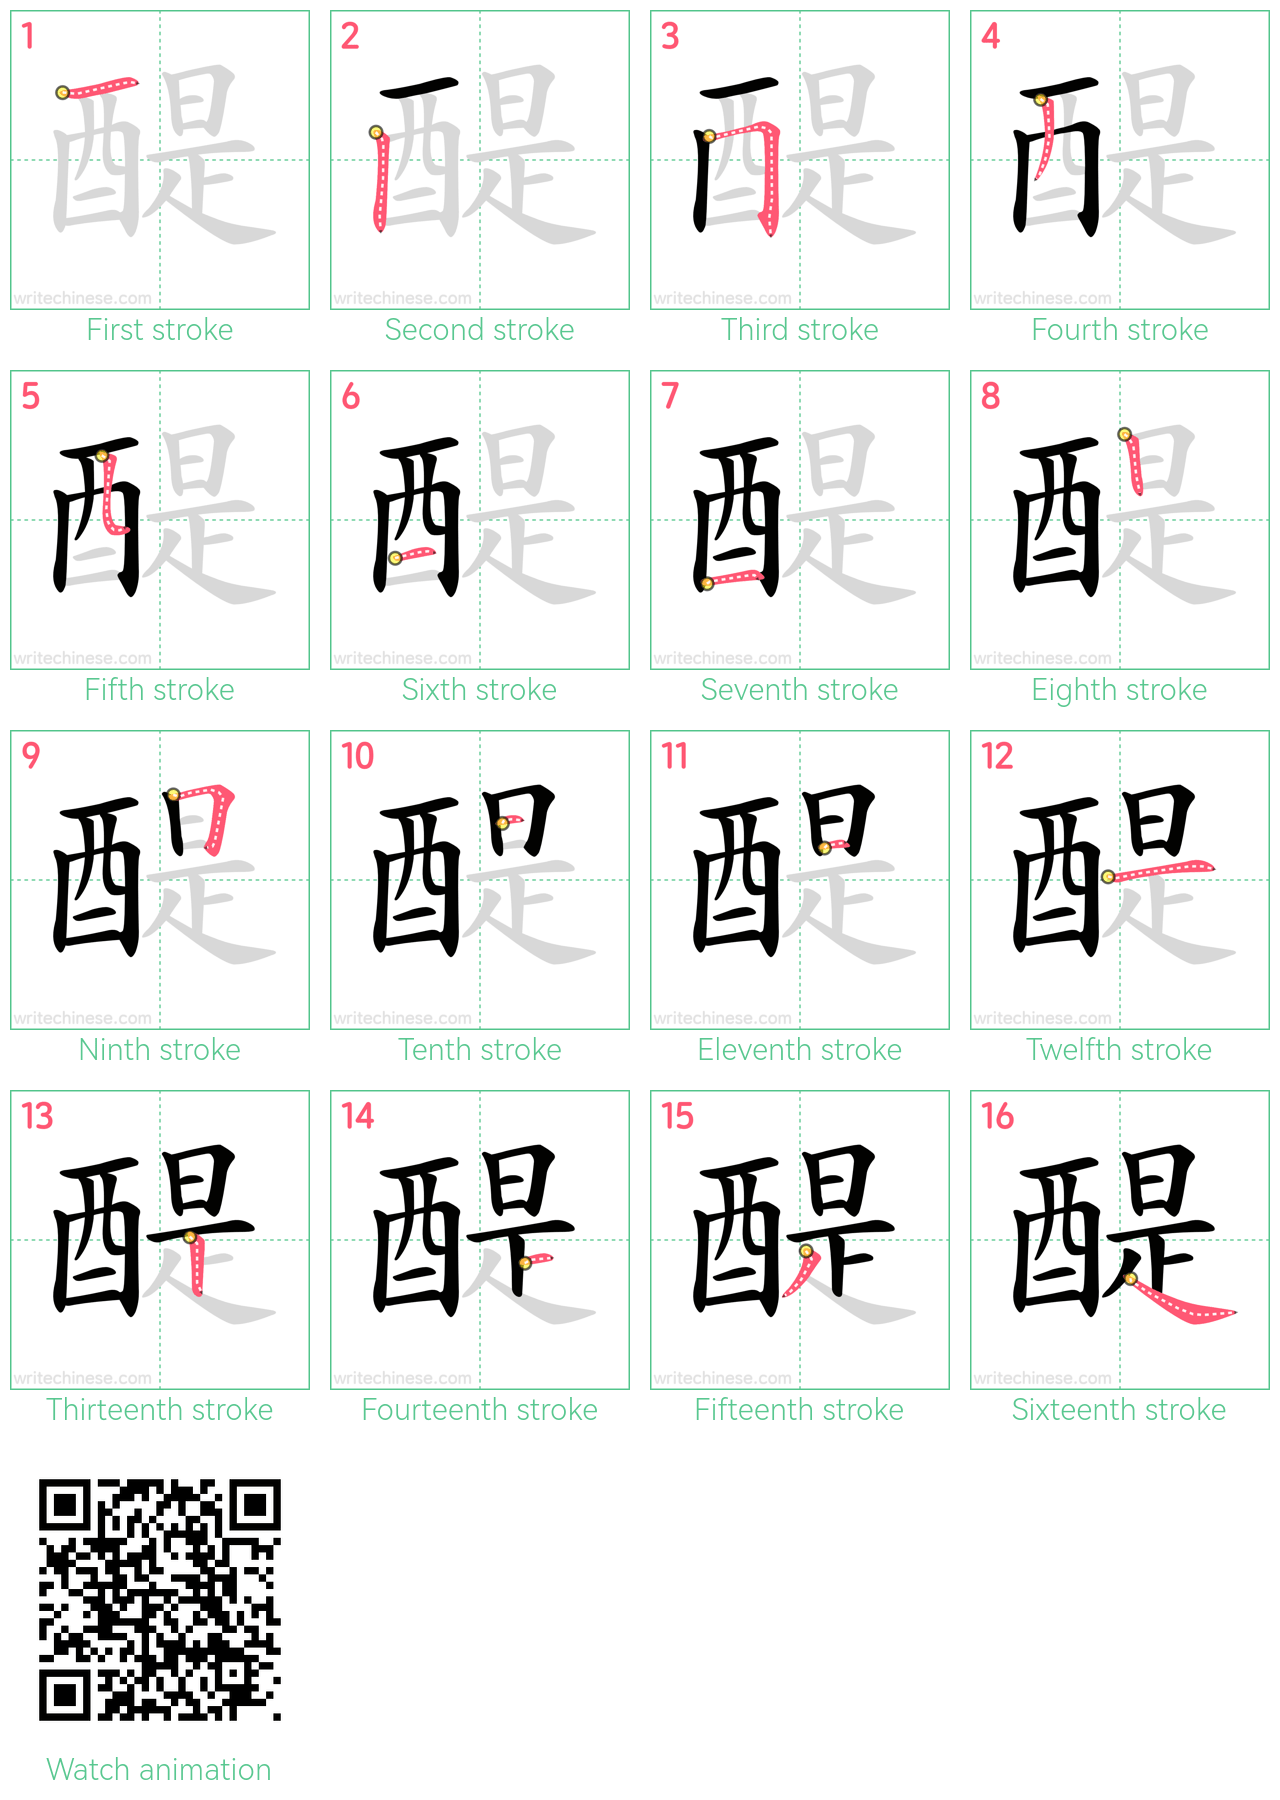 醍 step-by-step stroke order diagrams